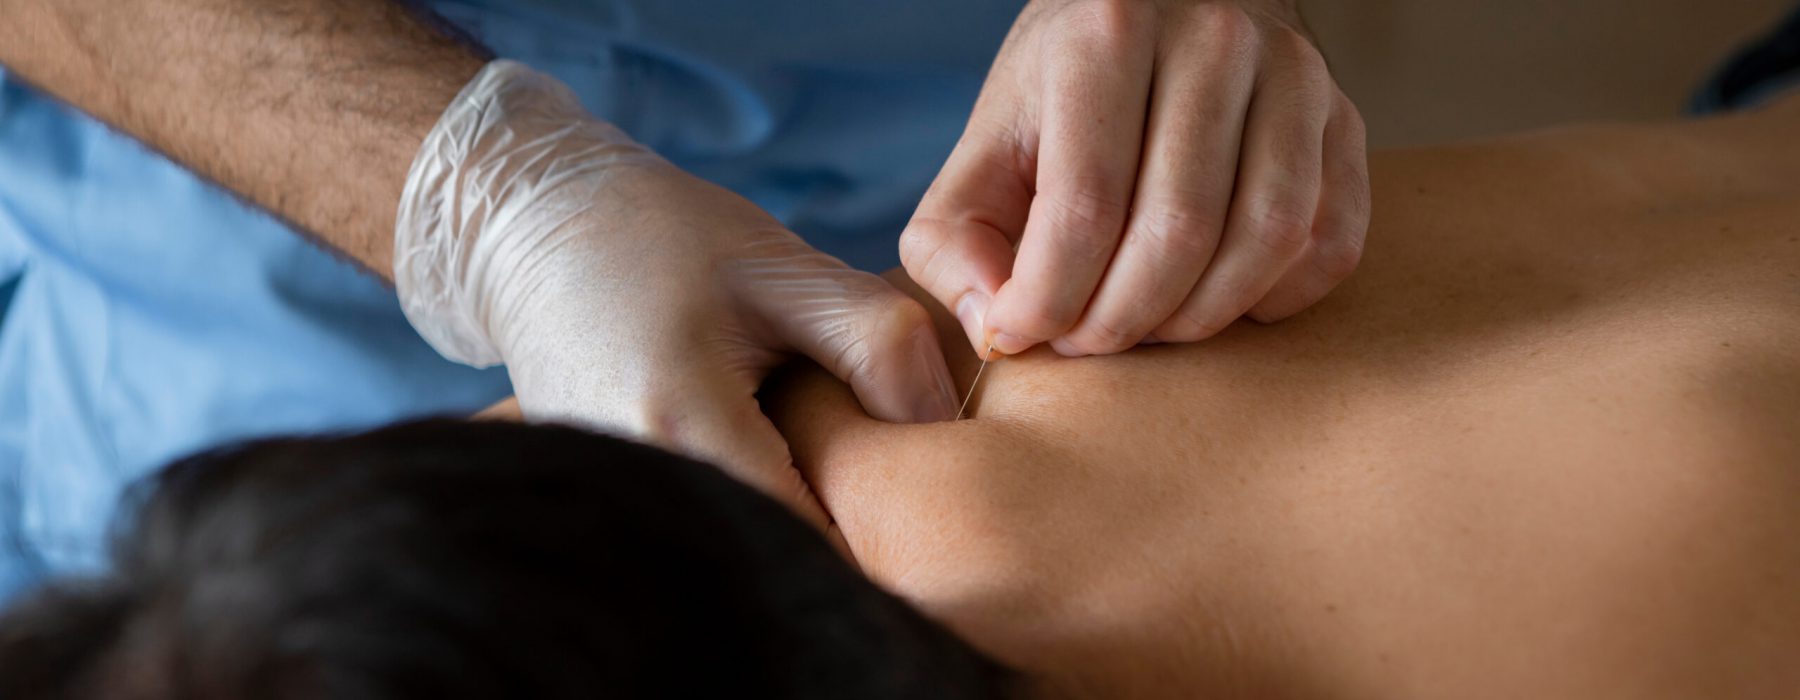 Middenstuk van handen in handschoenen van een fysiotherapeut of arts die een dry needling behandeling uitvoert bij een mannelijke patiënt met rugpijn.